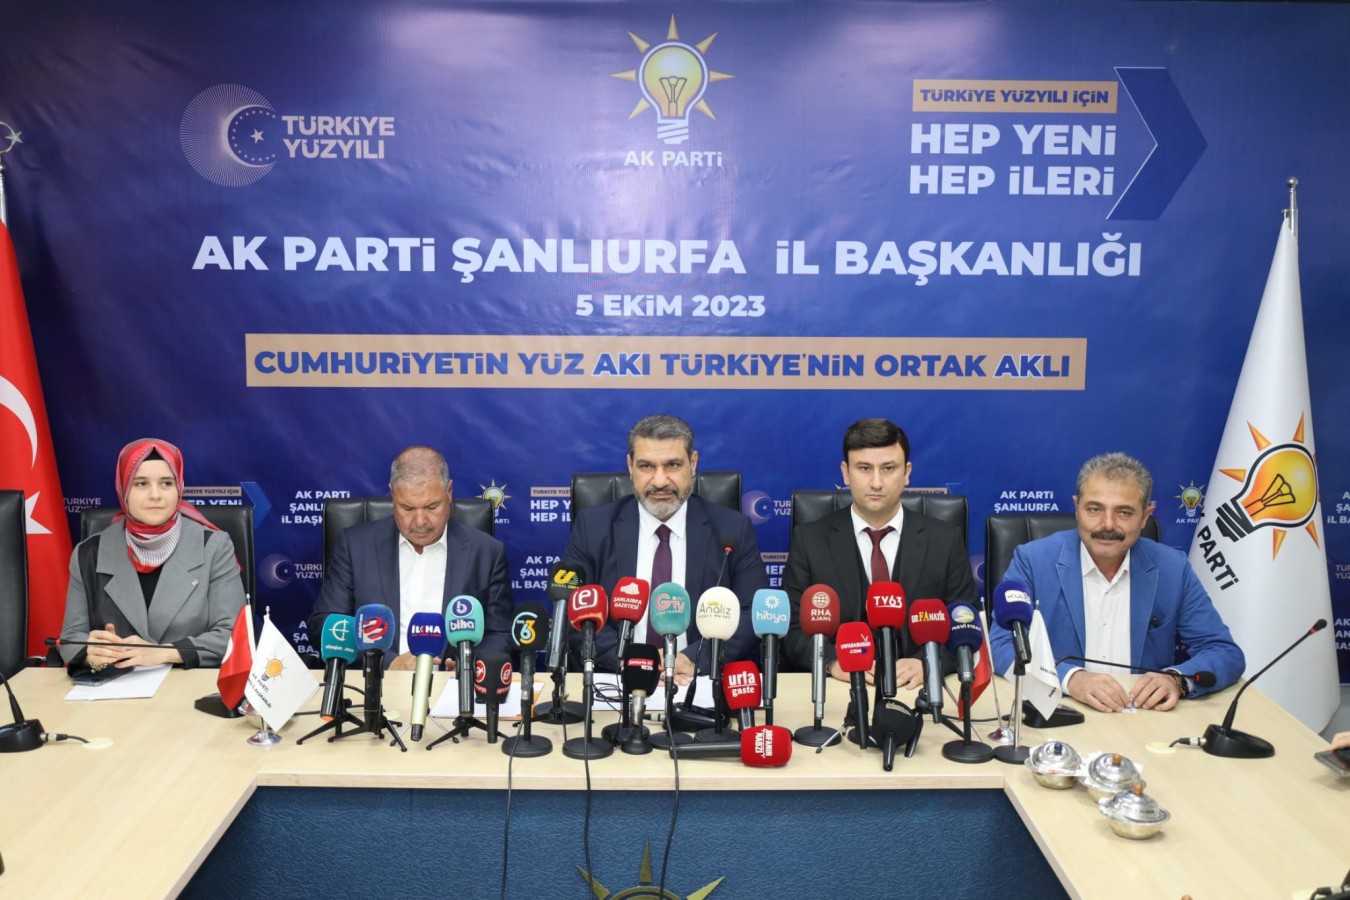 AK Parti Urfa’dan Olağanüstü Büyük Kongre öncesi basın açıklaması;